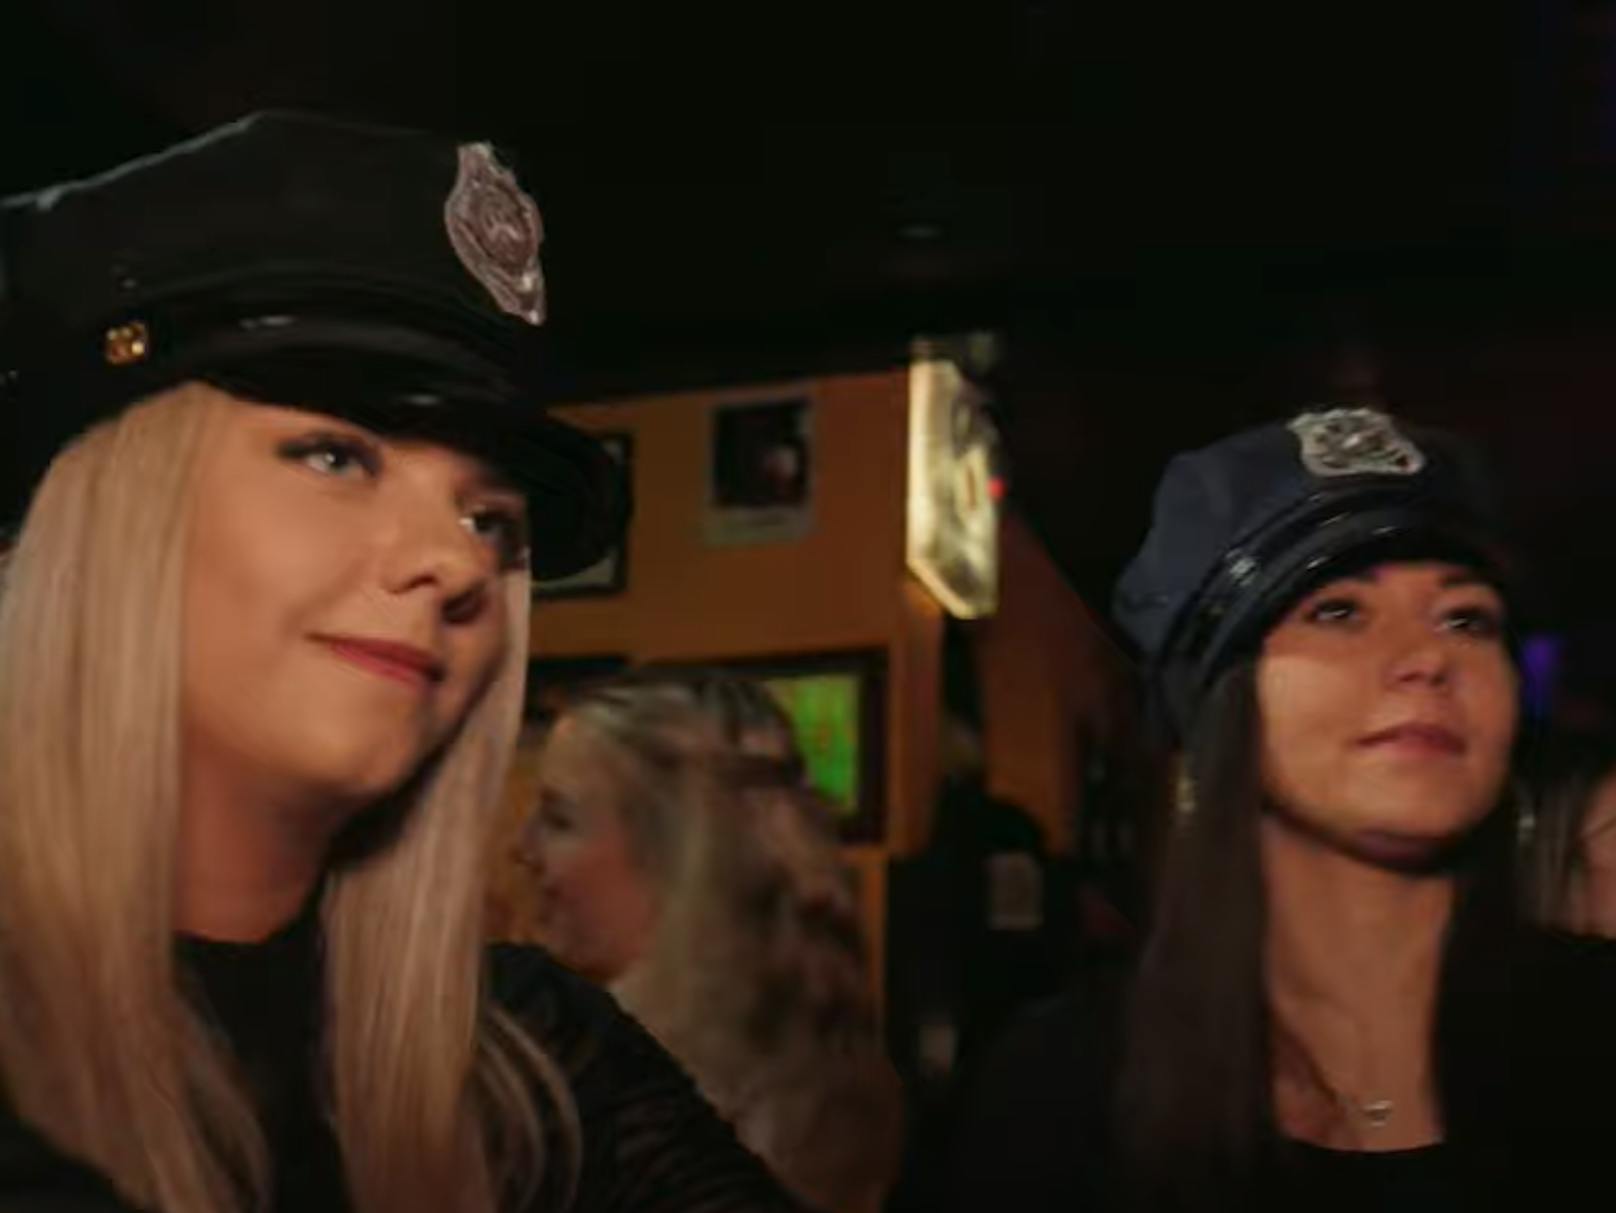 Dabei handelt es sich bei der "Hüttenpolizei" nur um zwei junge Damen, die als Polizistinnen verkleidet die Aprés-Ski-Party stürmen ...